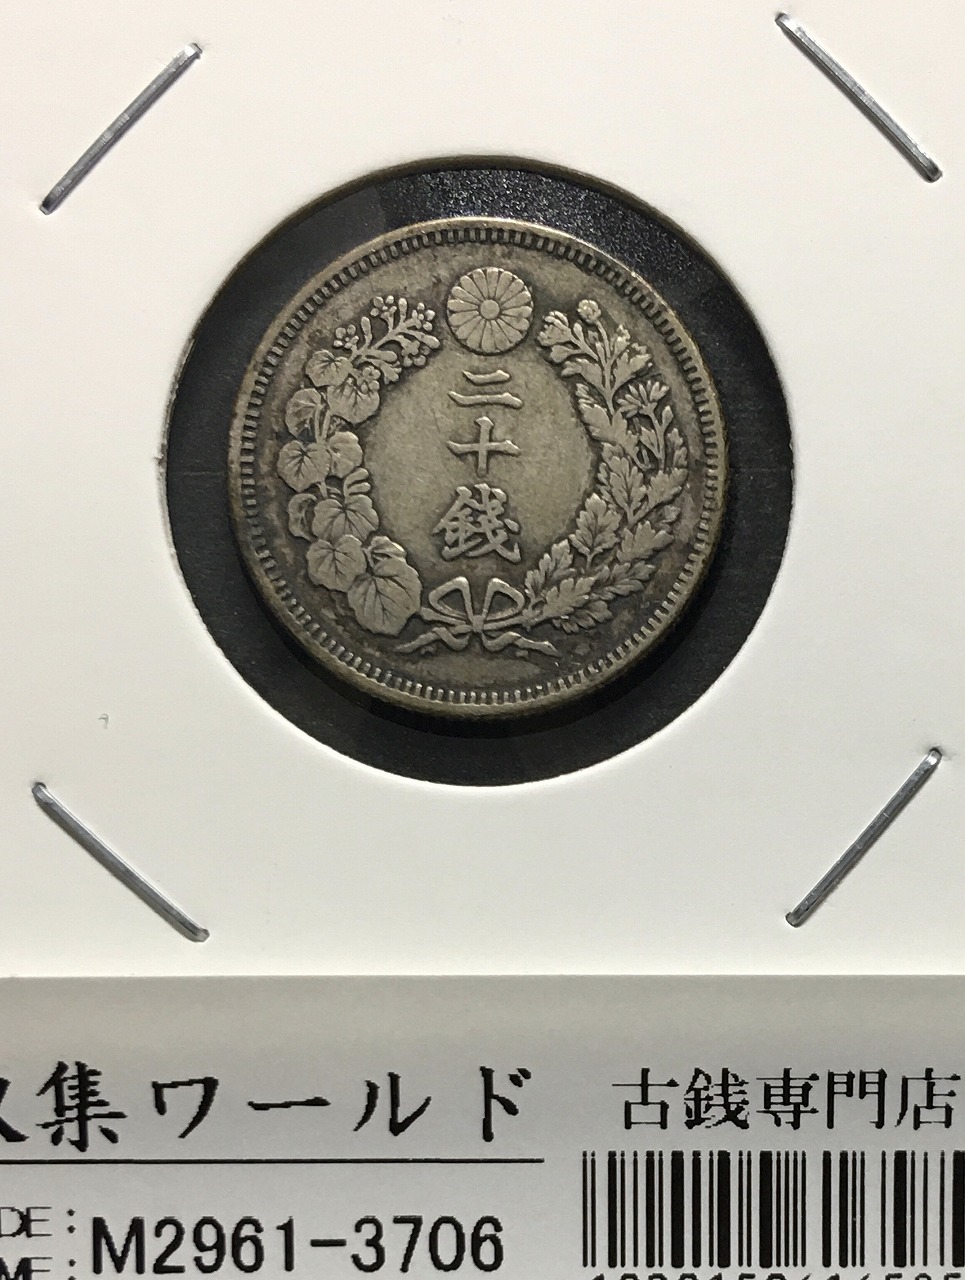 旭日 20銭銀貨 明治39年銘(1906年) 近代銀貨シリーズ 流通美品